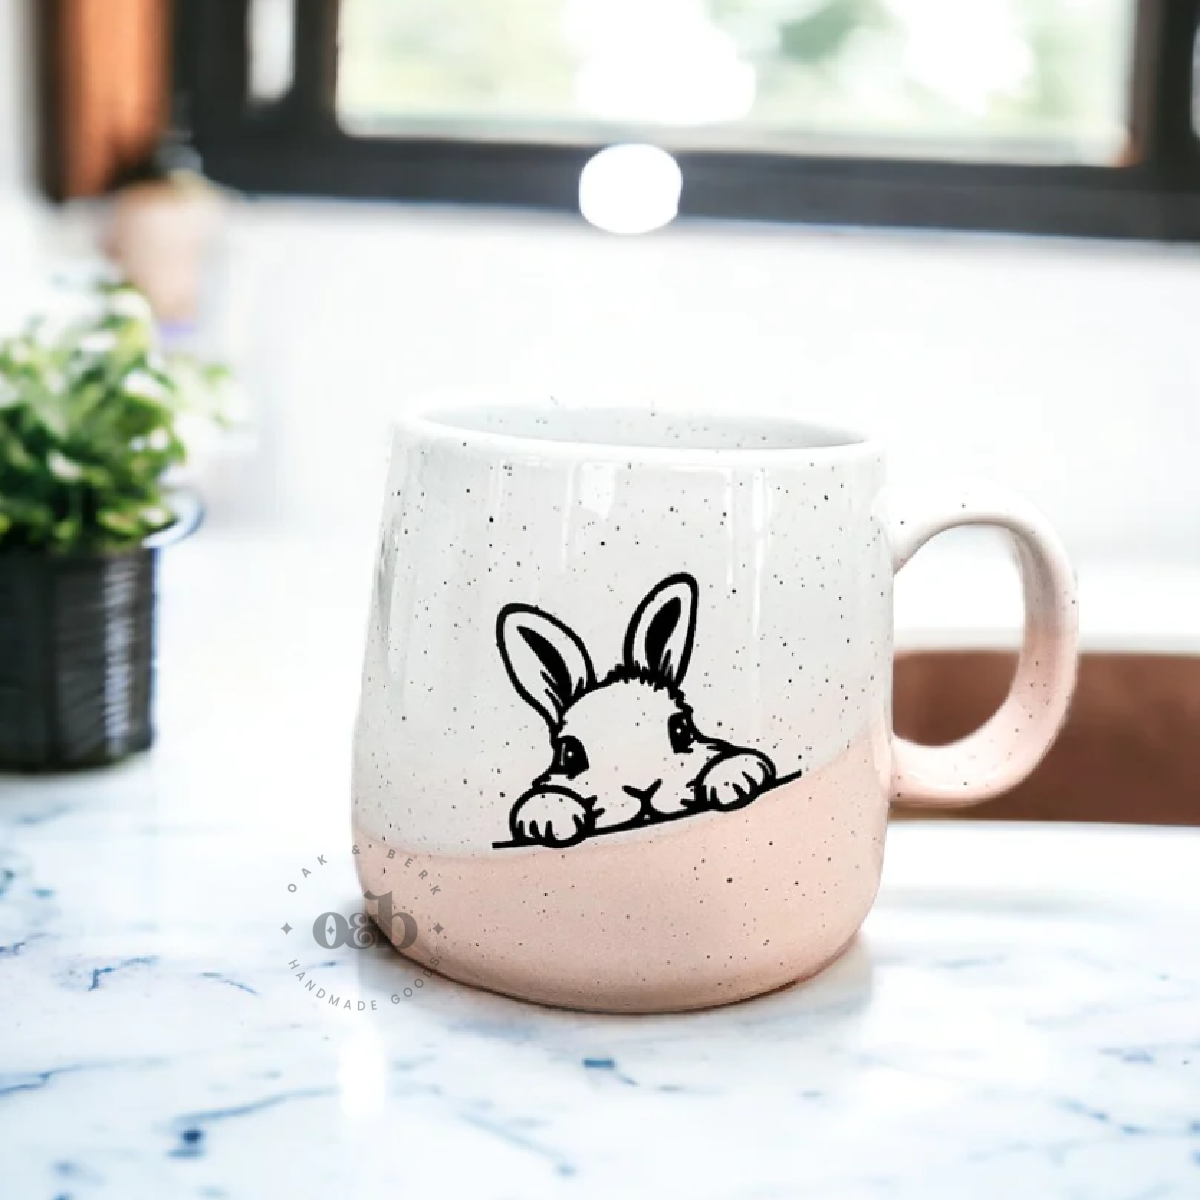 RTS / Bunny, ceramic mug